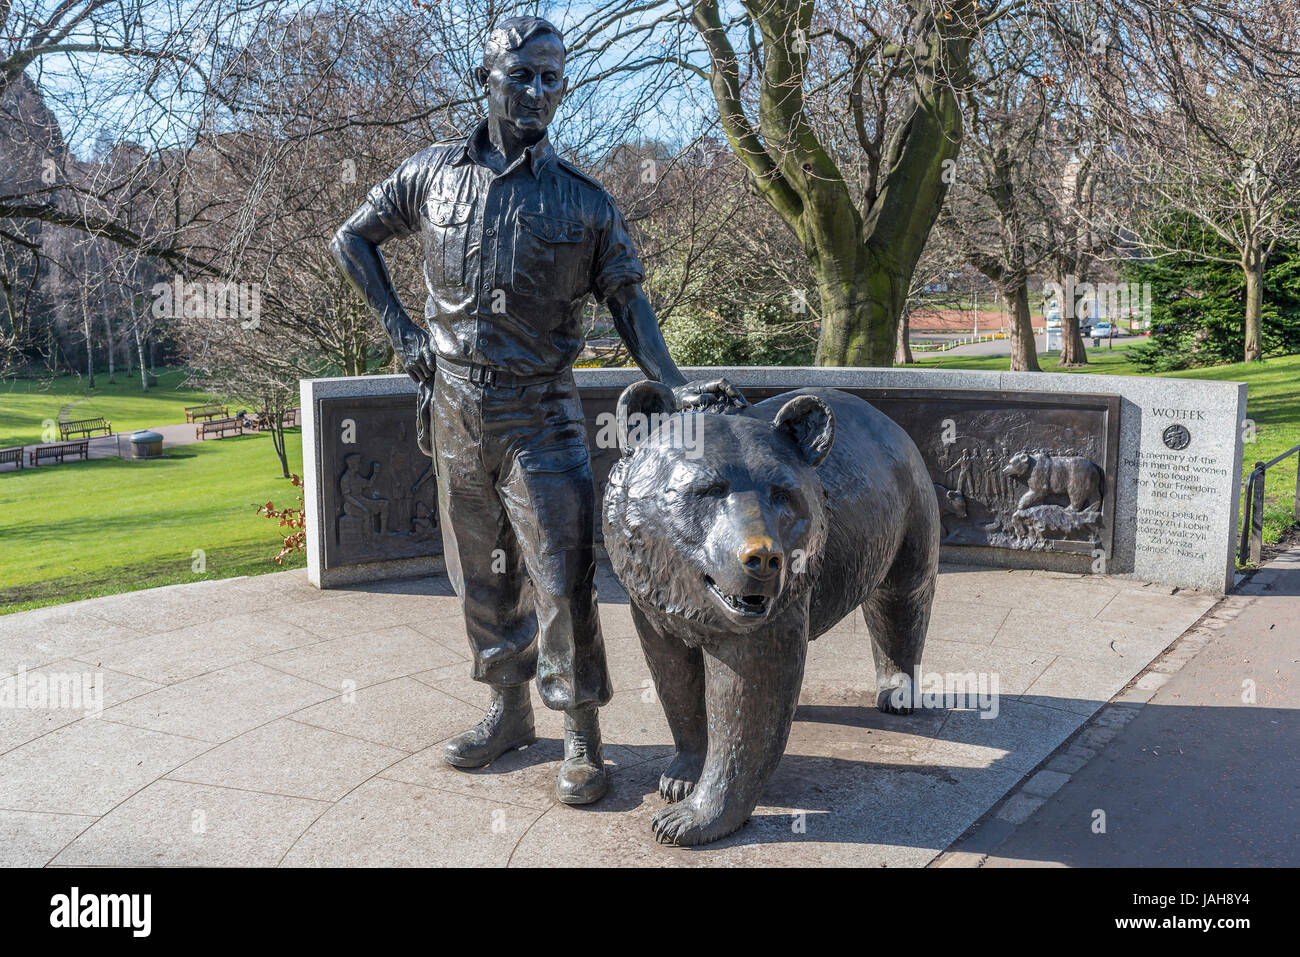 Statue représentant l'ours Wojtek "soldat" qui a été adopté par le contingent polonais durant la Seconde Guerre mondiale, à l'ouest de Princes Street Gardens, Édimbourg, Écosse Banque D'Images